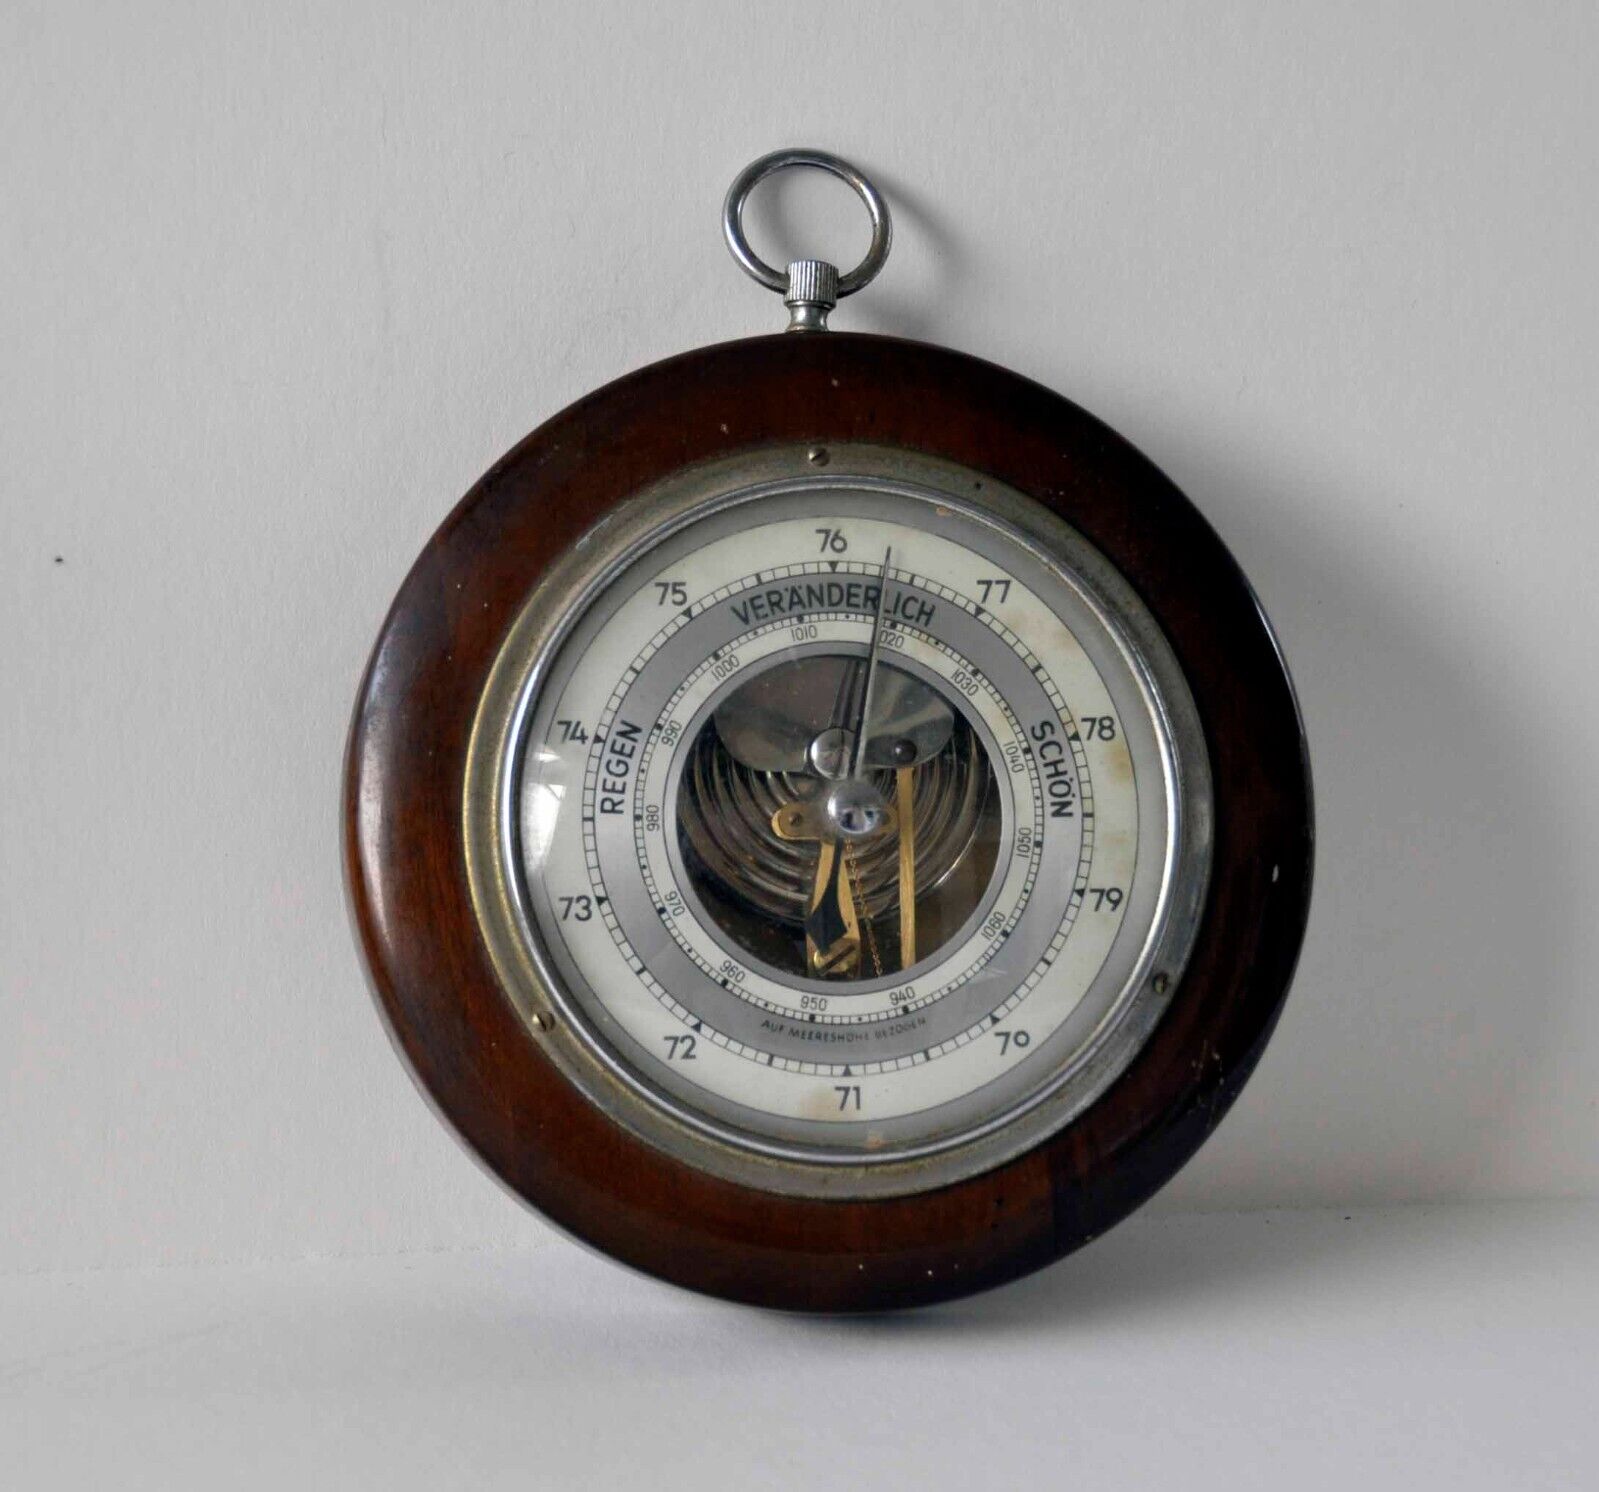 Vintage German Barometer Regen Veranderlich Schon 6” round